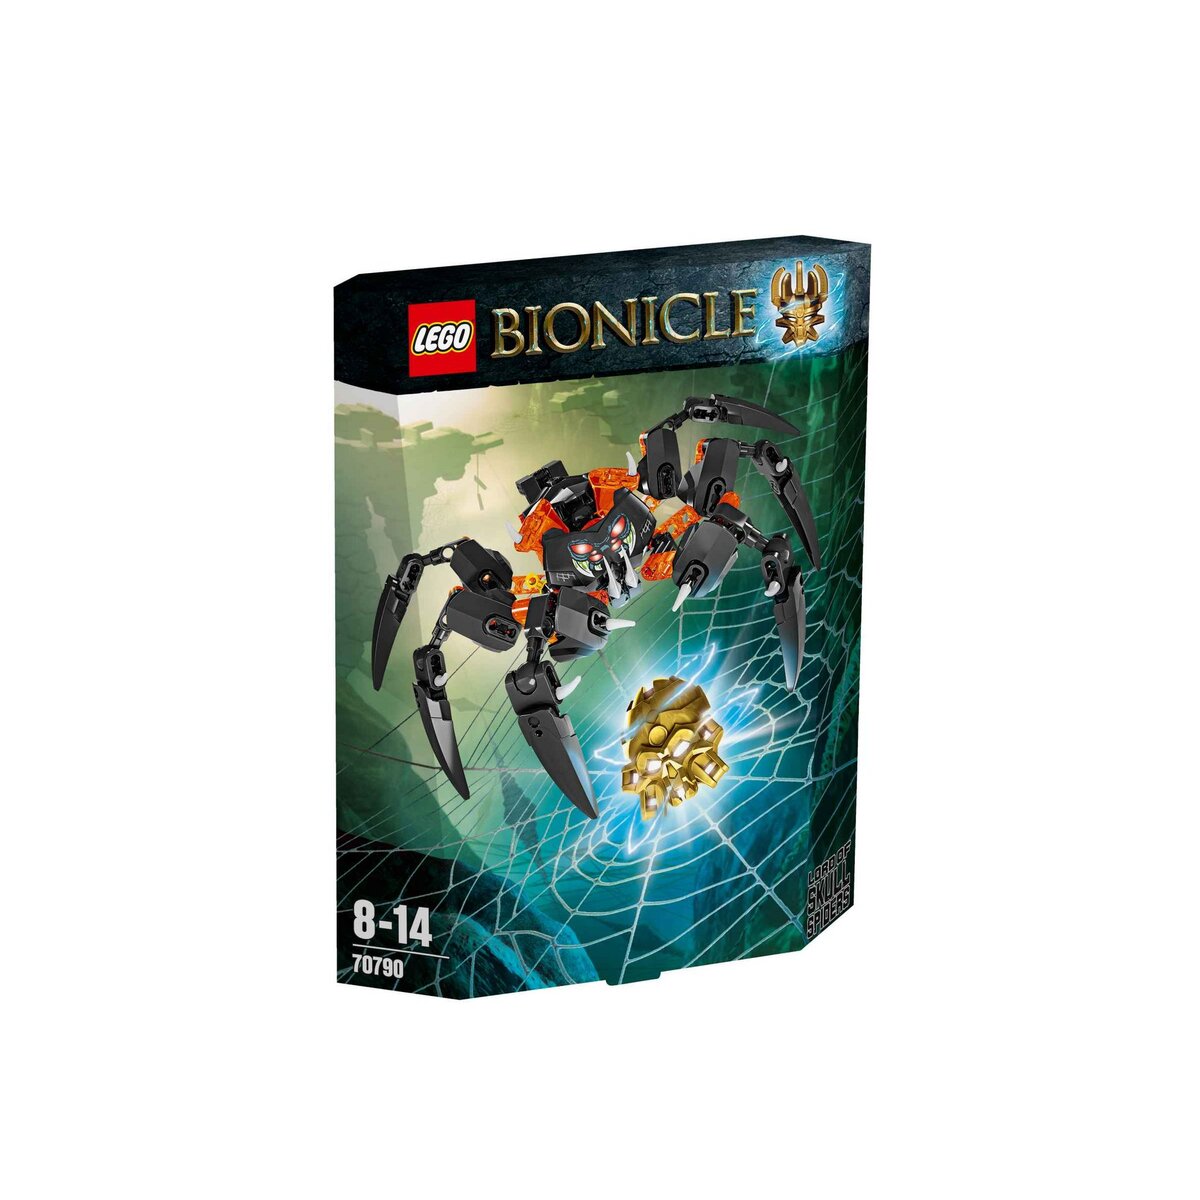 LEGO Bionicle 70790